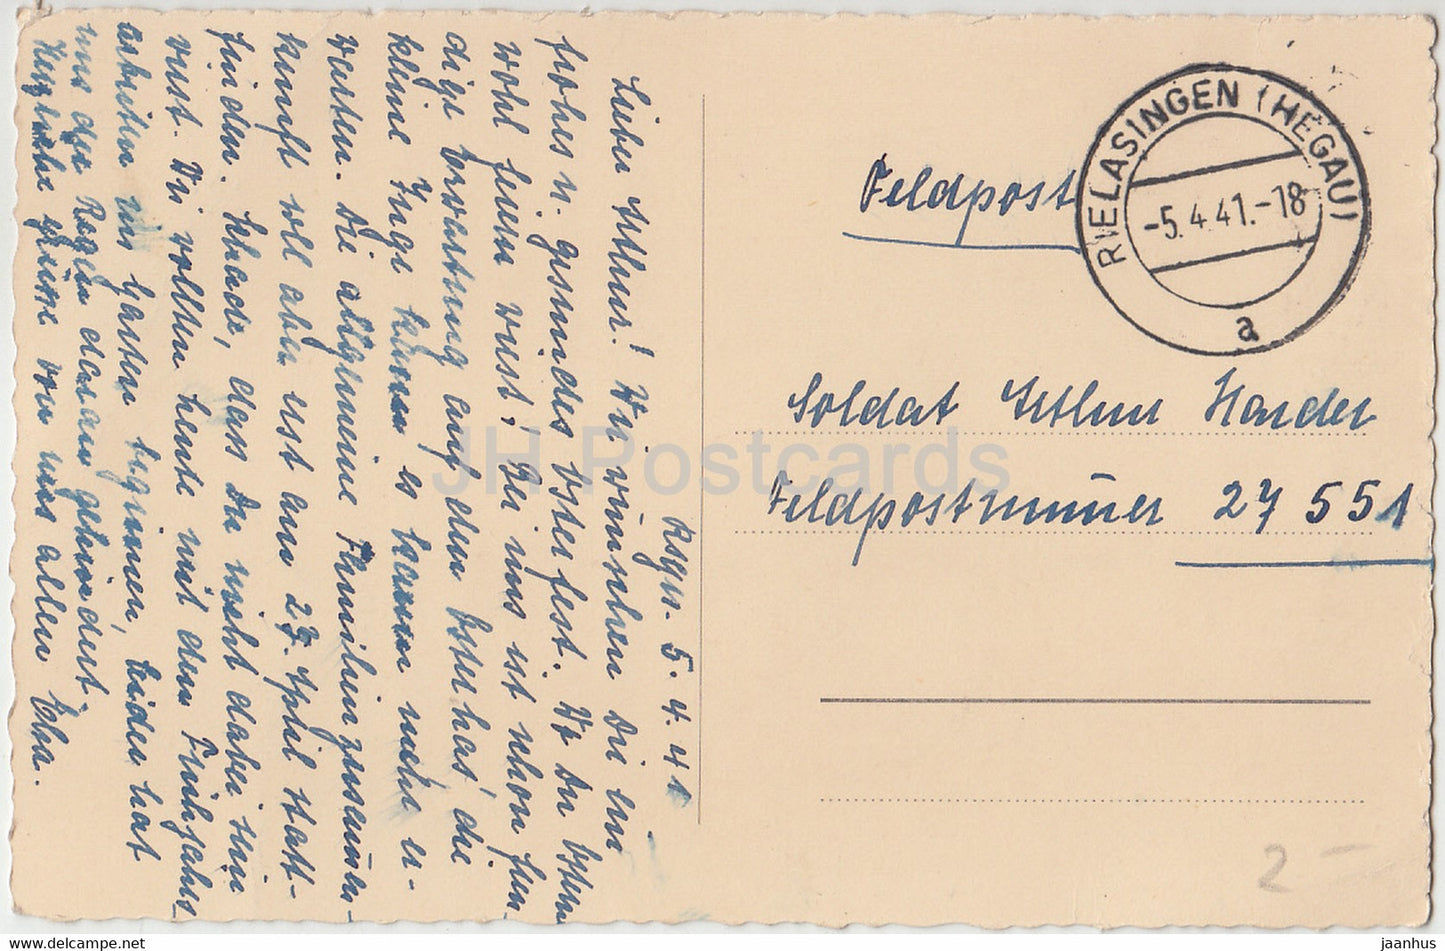 Ostergrußkarte - Frohes Osterfest - Schaf - Feldpost - alte Postkarte - 1941 - Deutschland - gebraucht